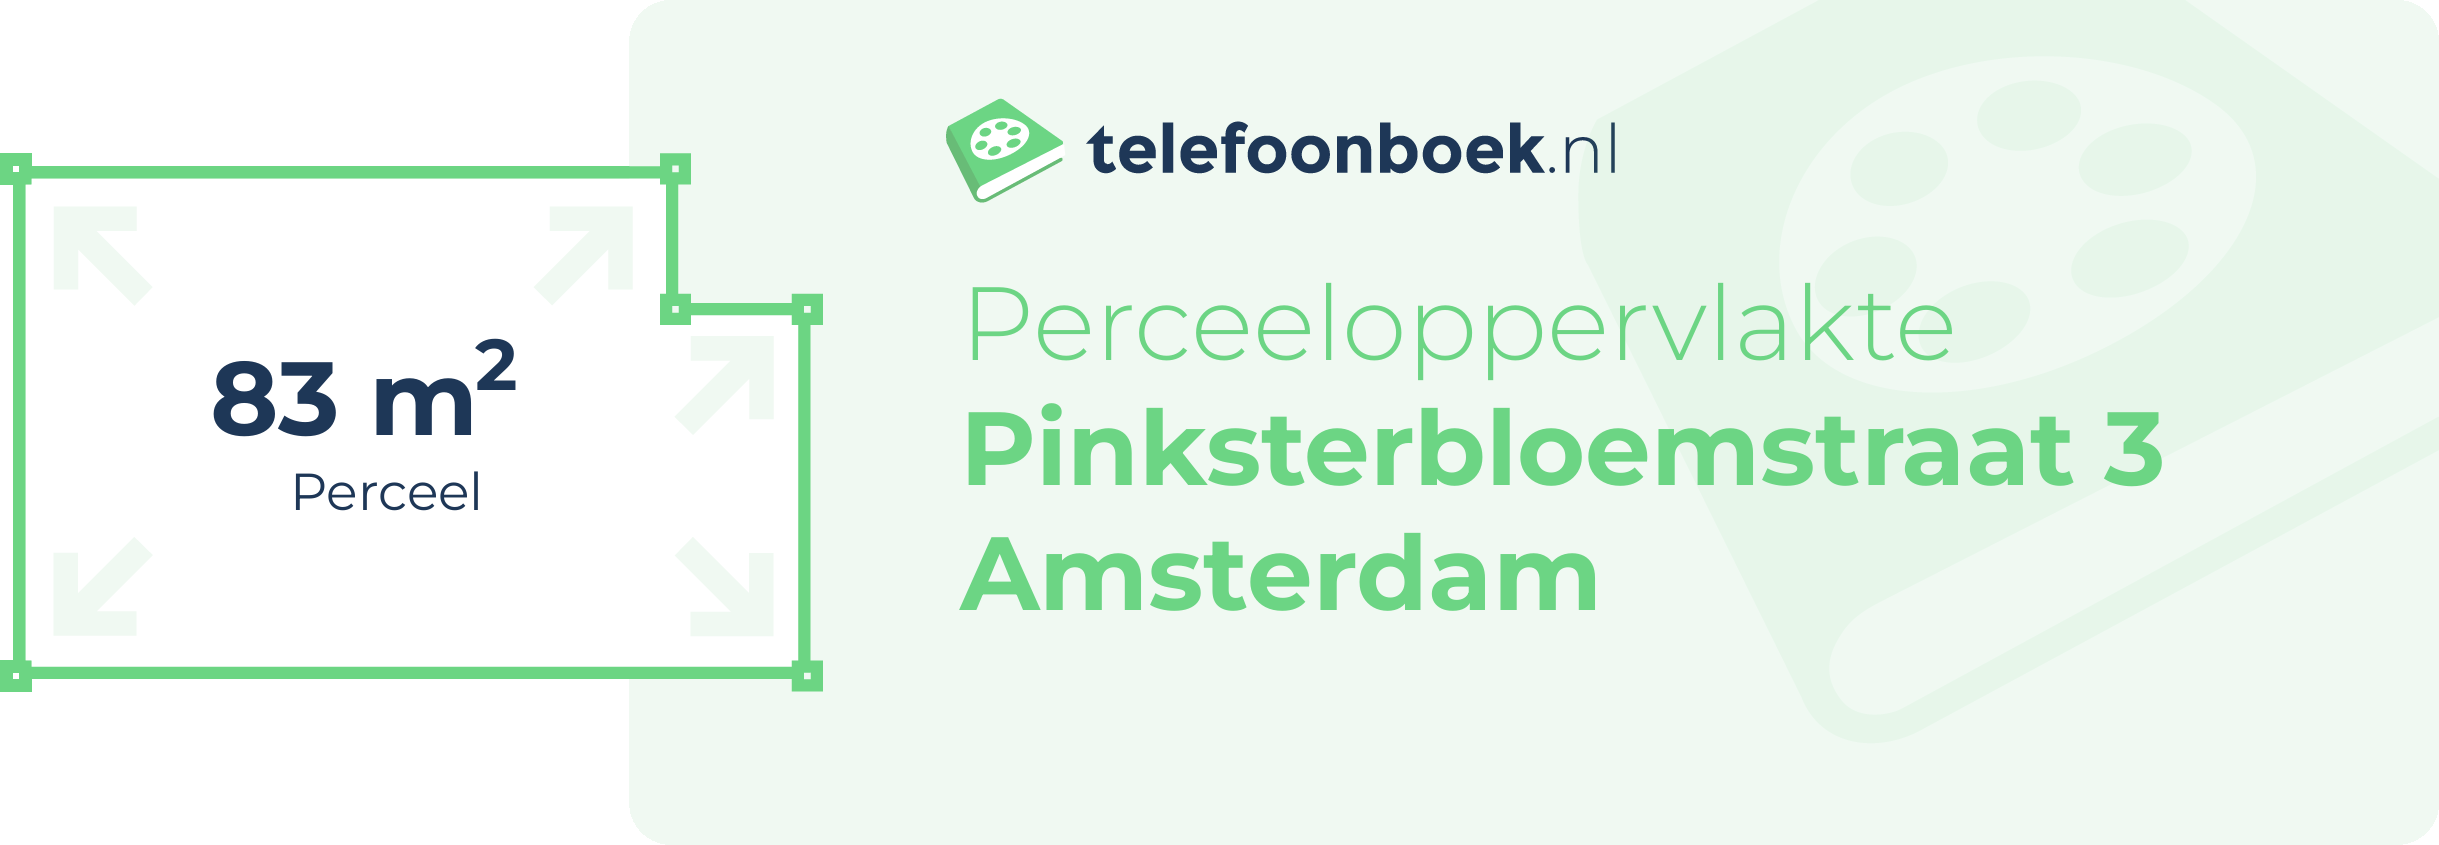 Perceeloppervlakte Pinksterbloemstraat 3 Amsterdam